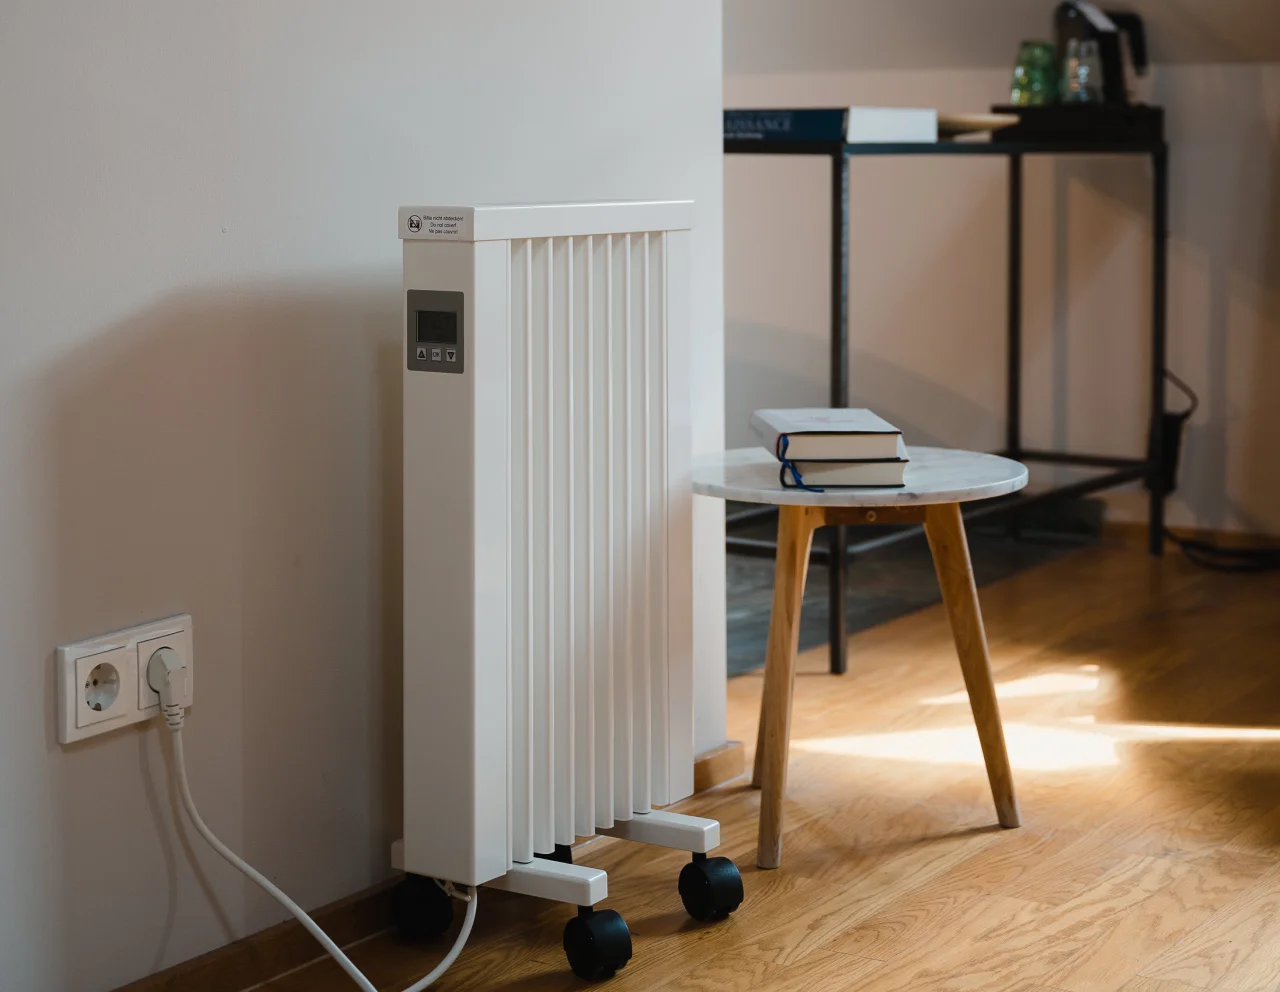 Tipos de radiadores eléctricos: Opciones para calentar tu casa